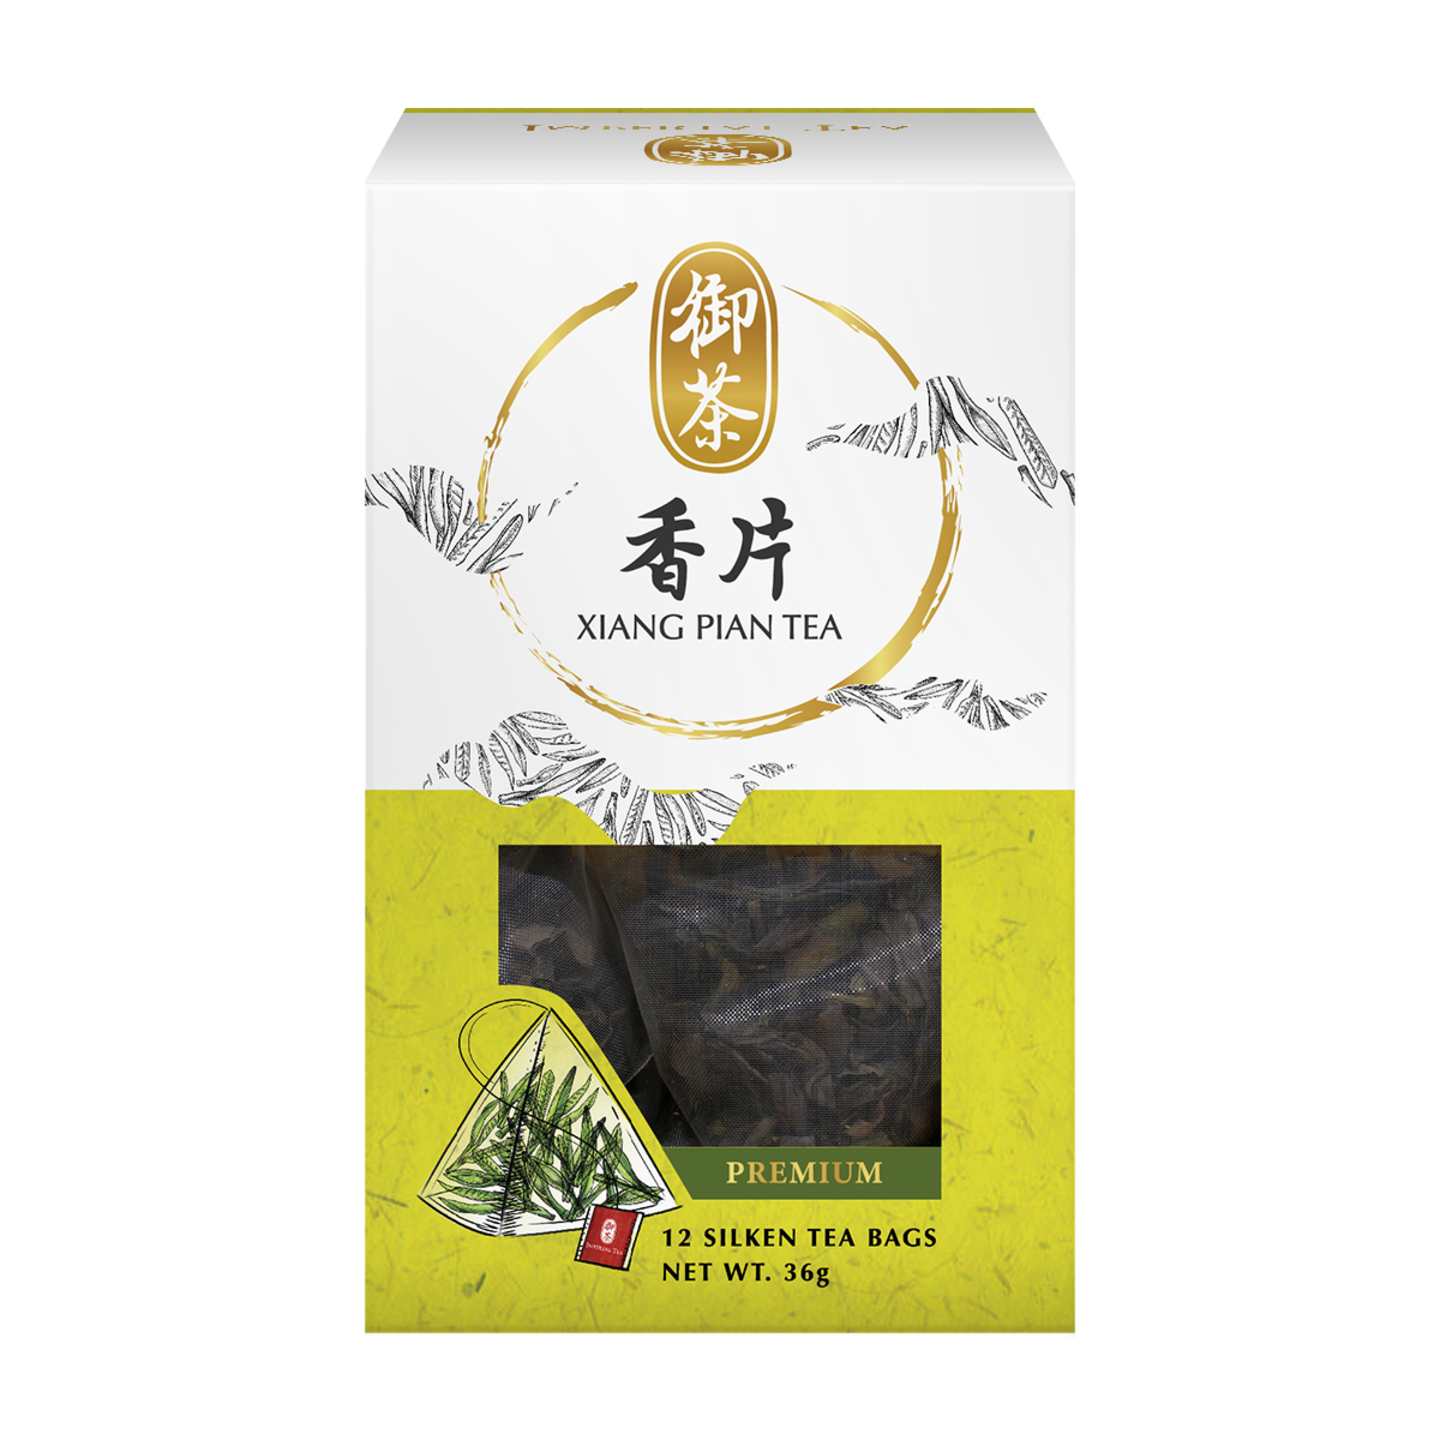 Xiang Pian Tea